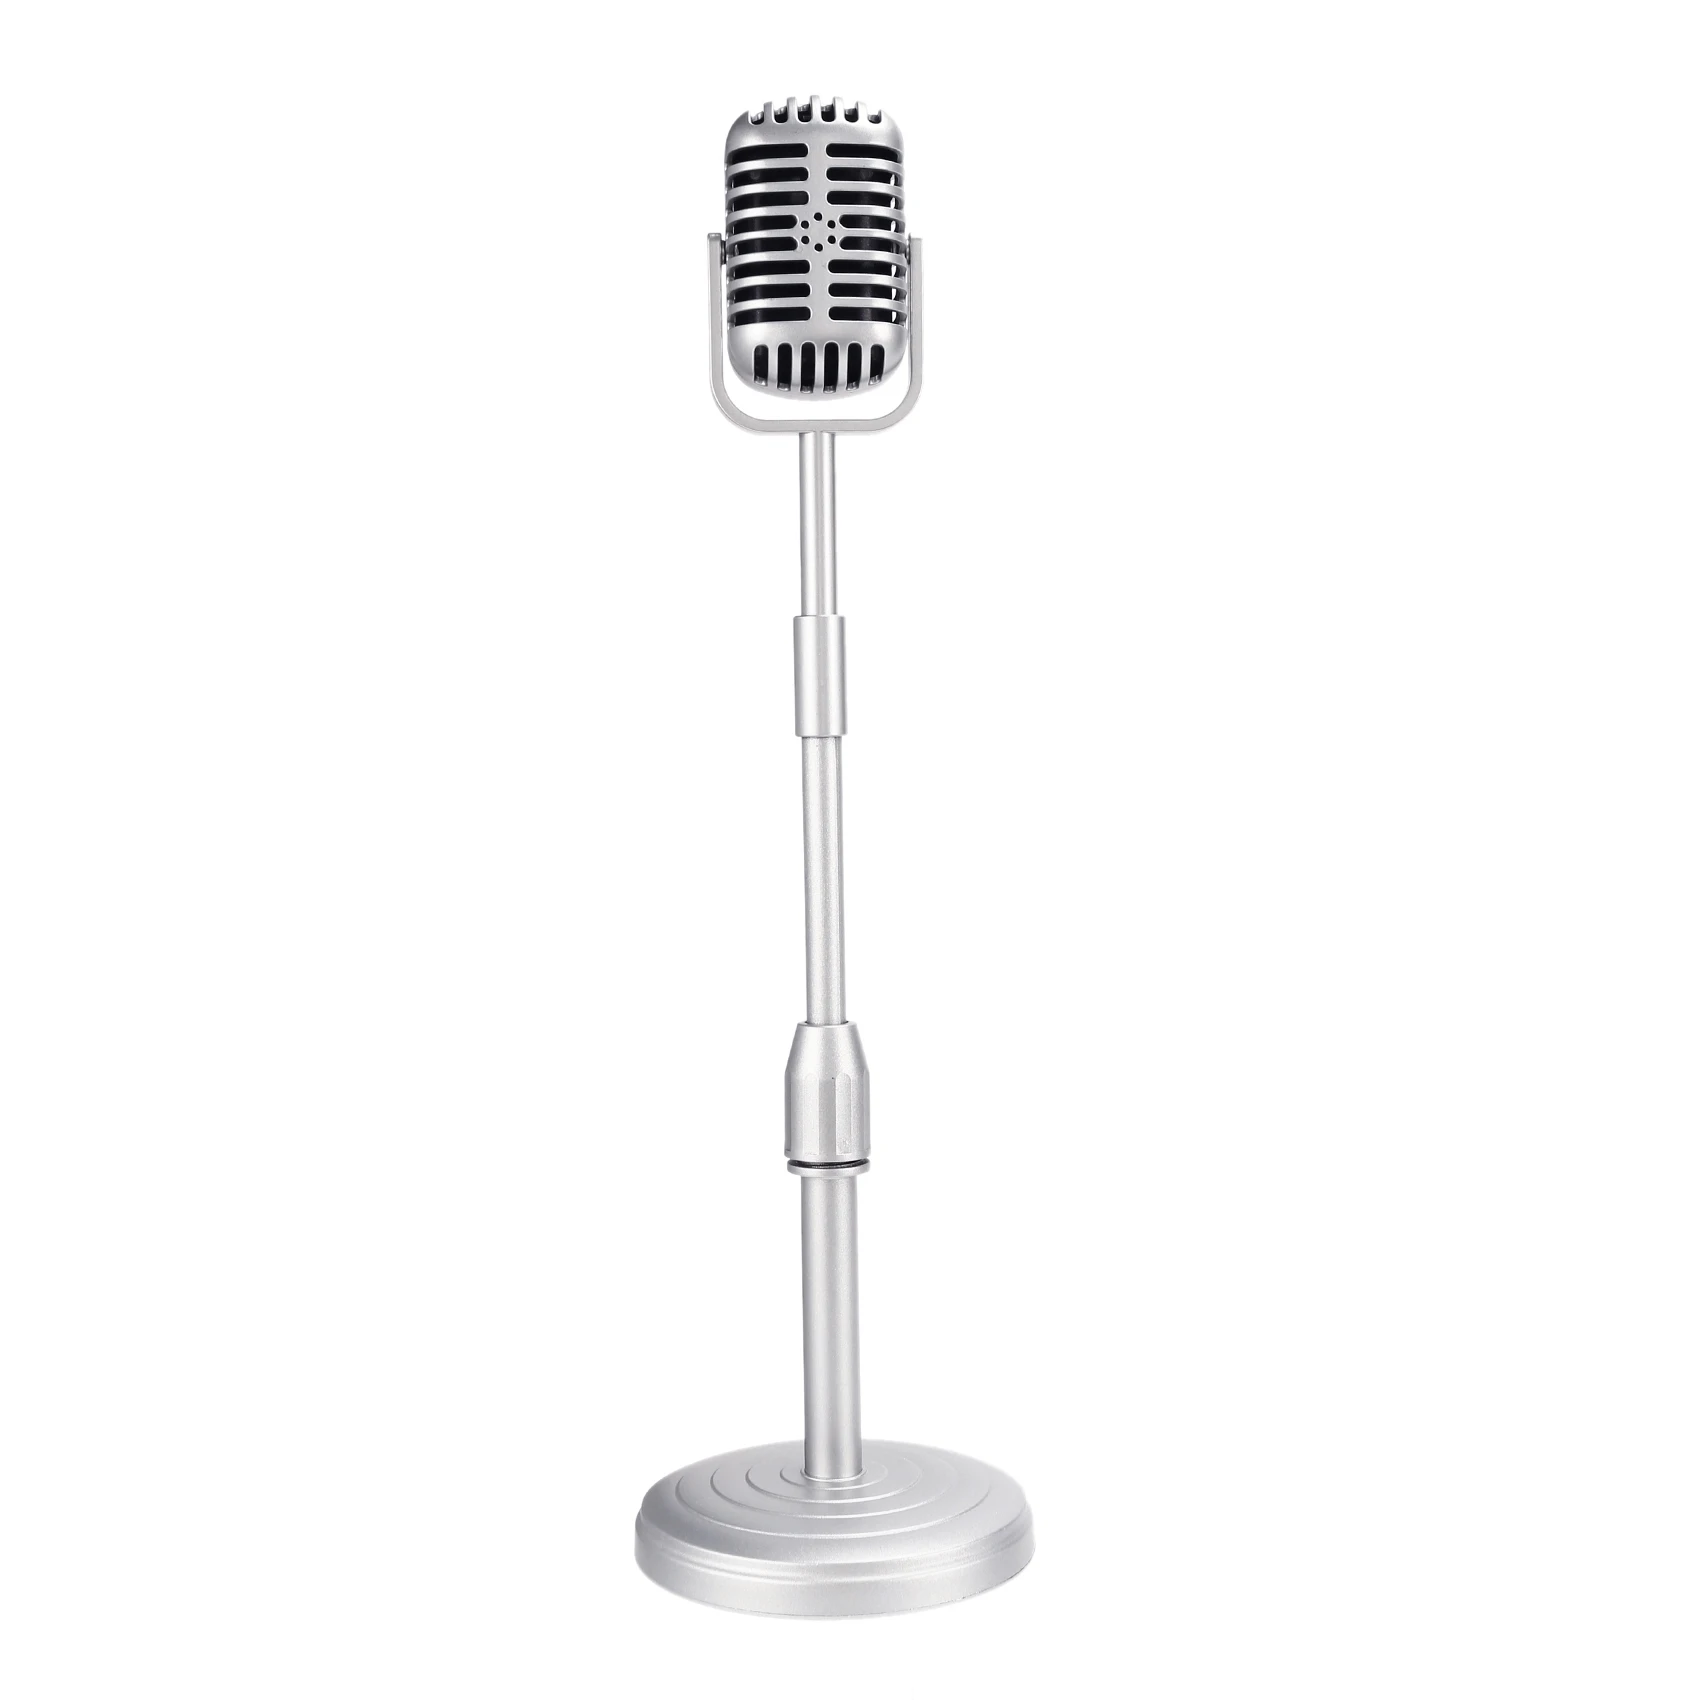 Винтажная модель подставки для настольного микрофона с регулируемой высотой, классическая подставка для микрофона в стиле ретро, поддельная подставка для микрофона, серебристый цвет